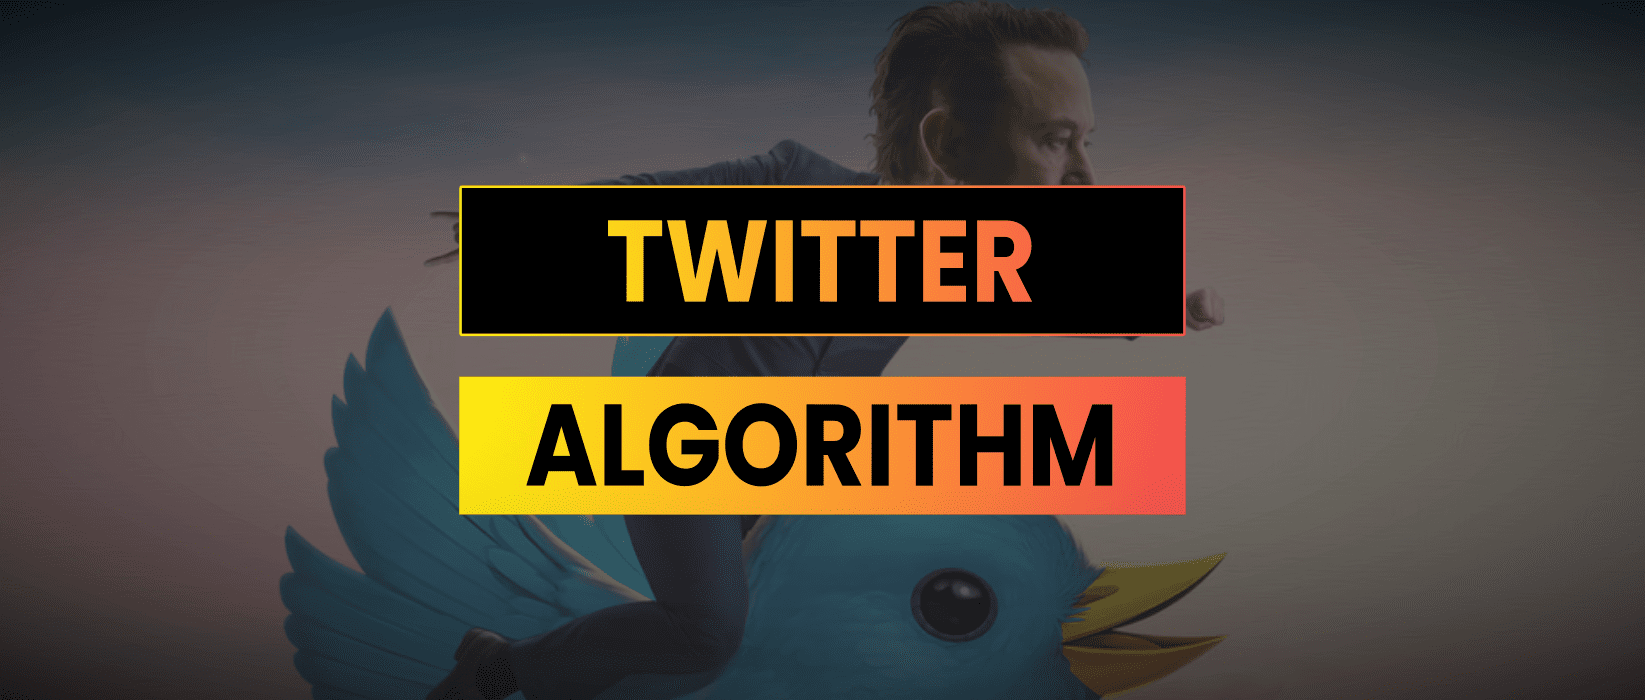 Twitter Algorithm